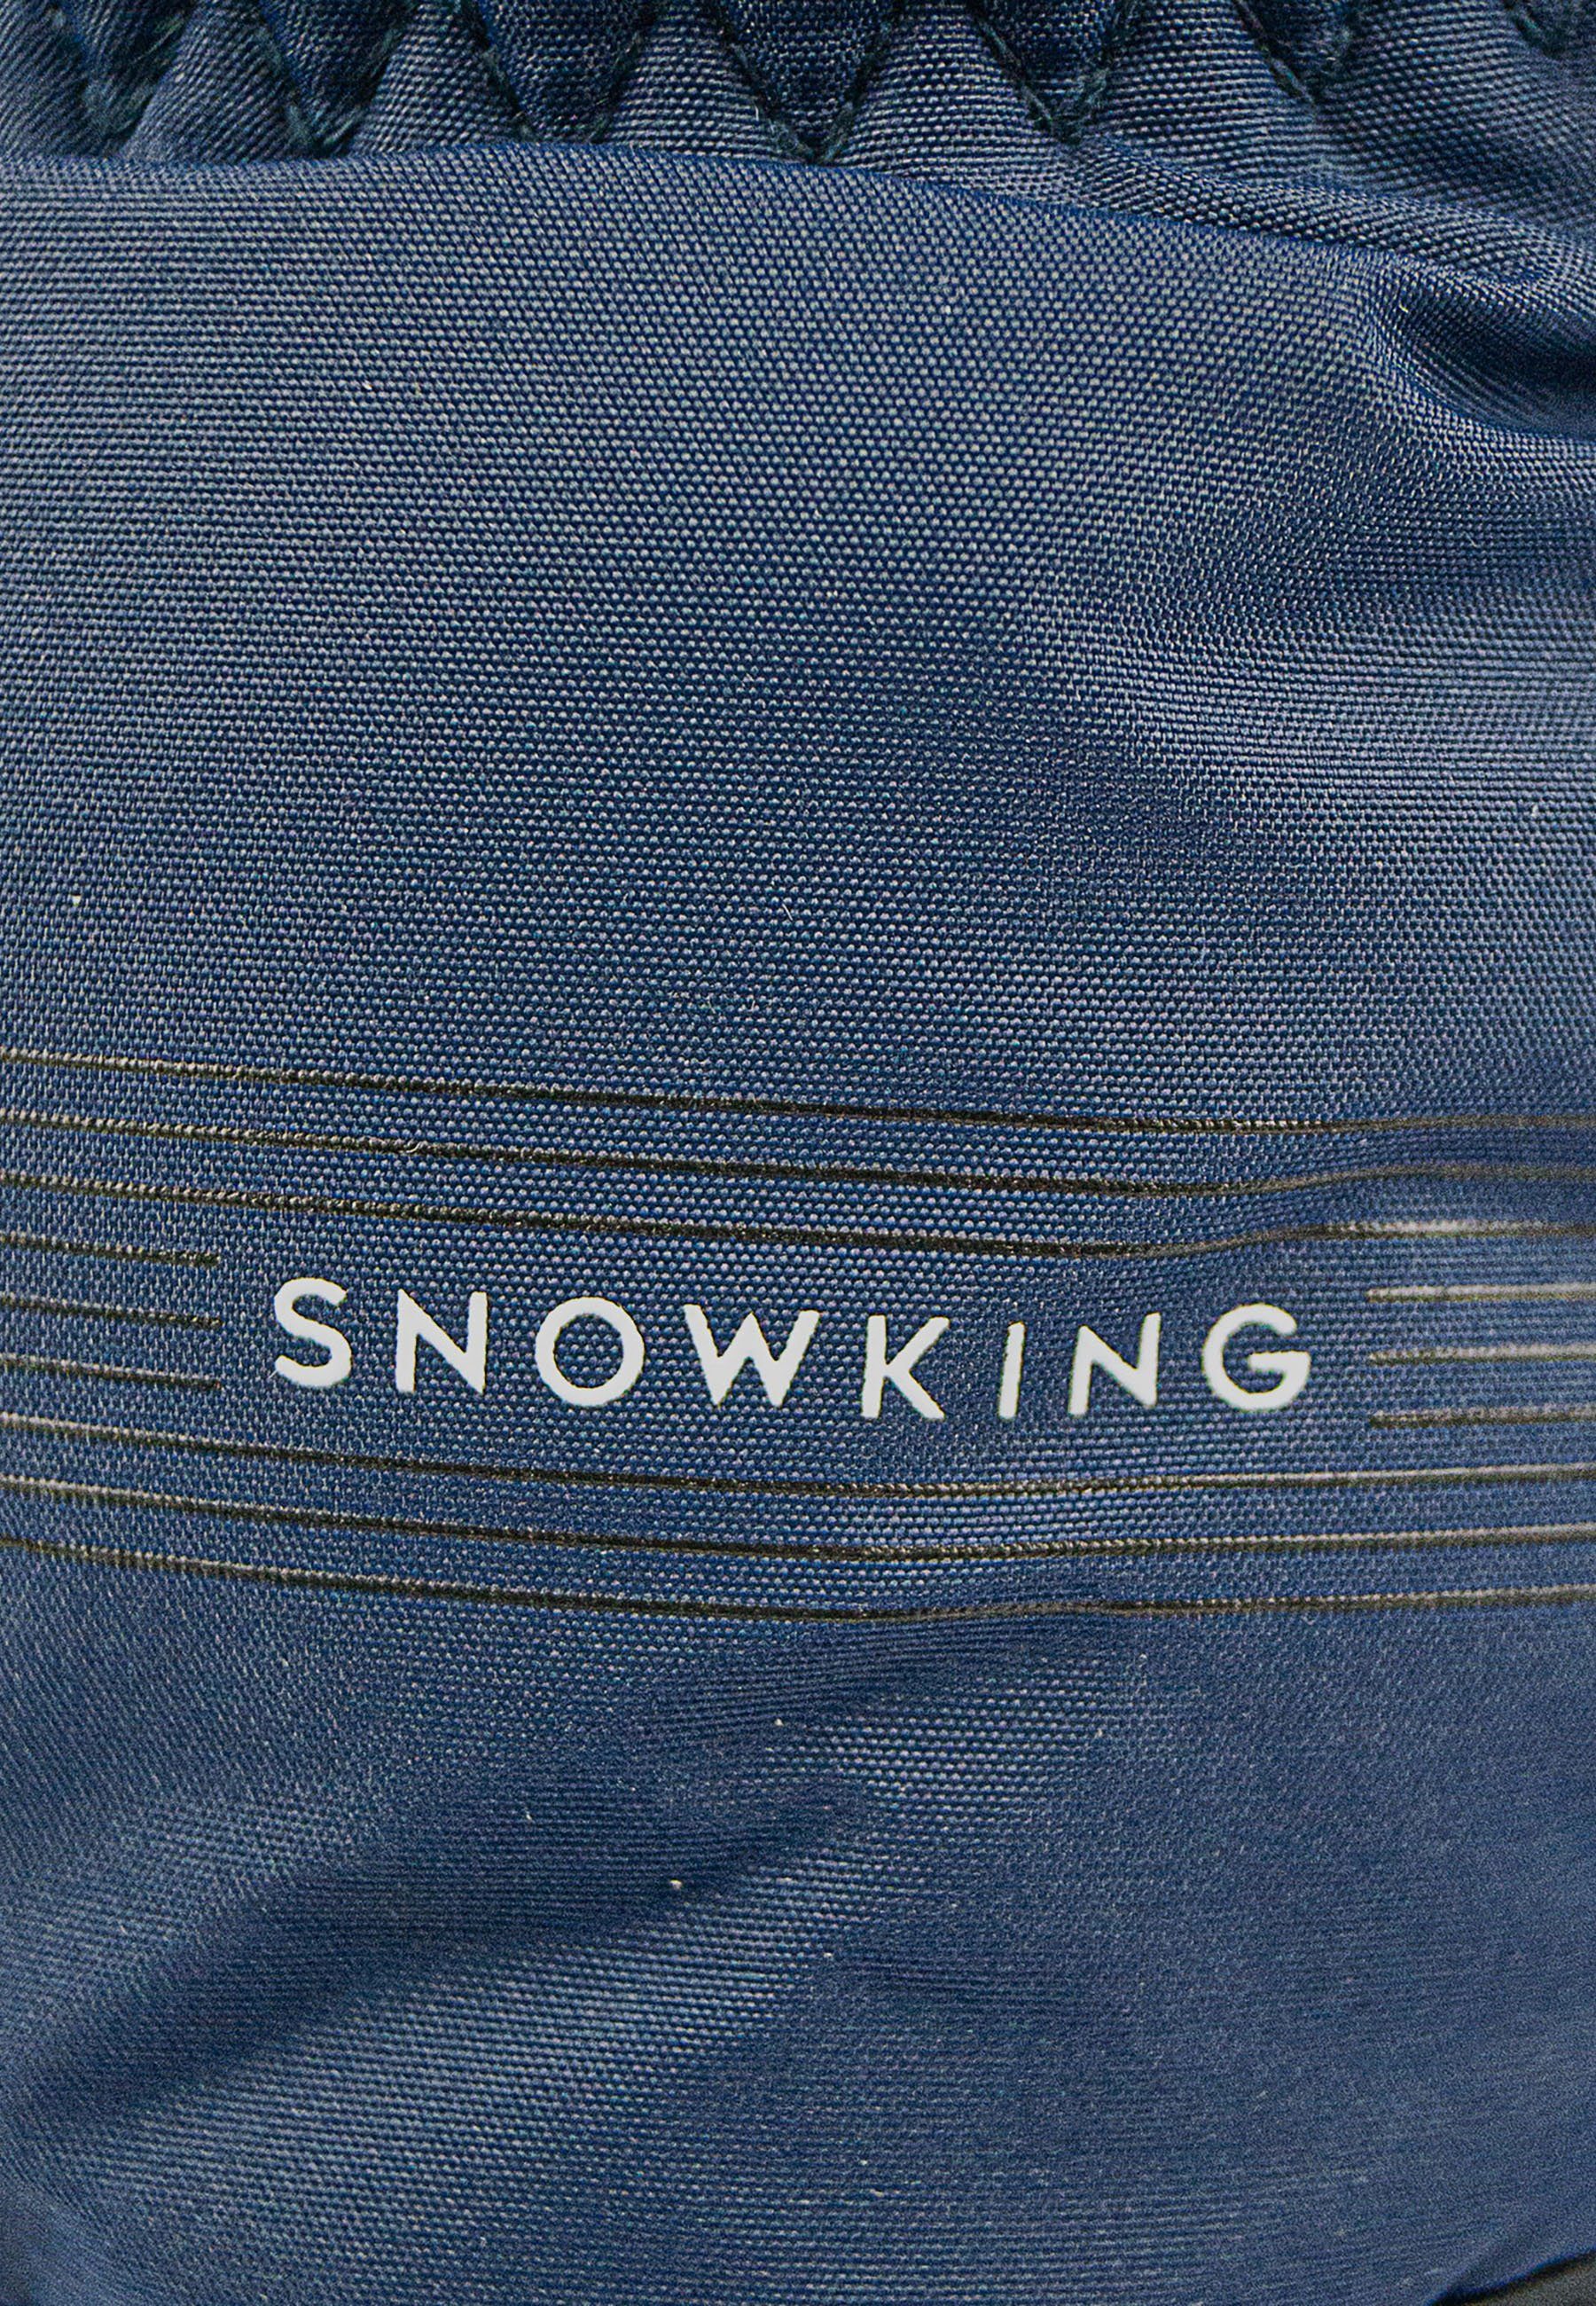 Reusch Skihandschuhe Snow King aus blau-schwarz Material atmungsaktivem